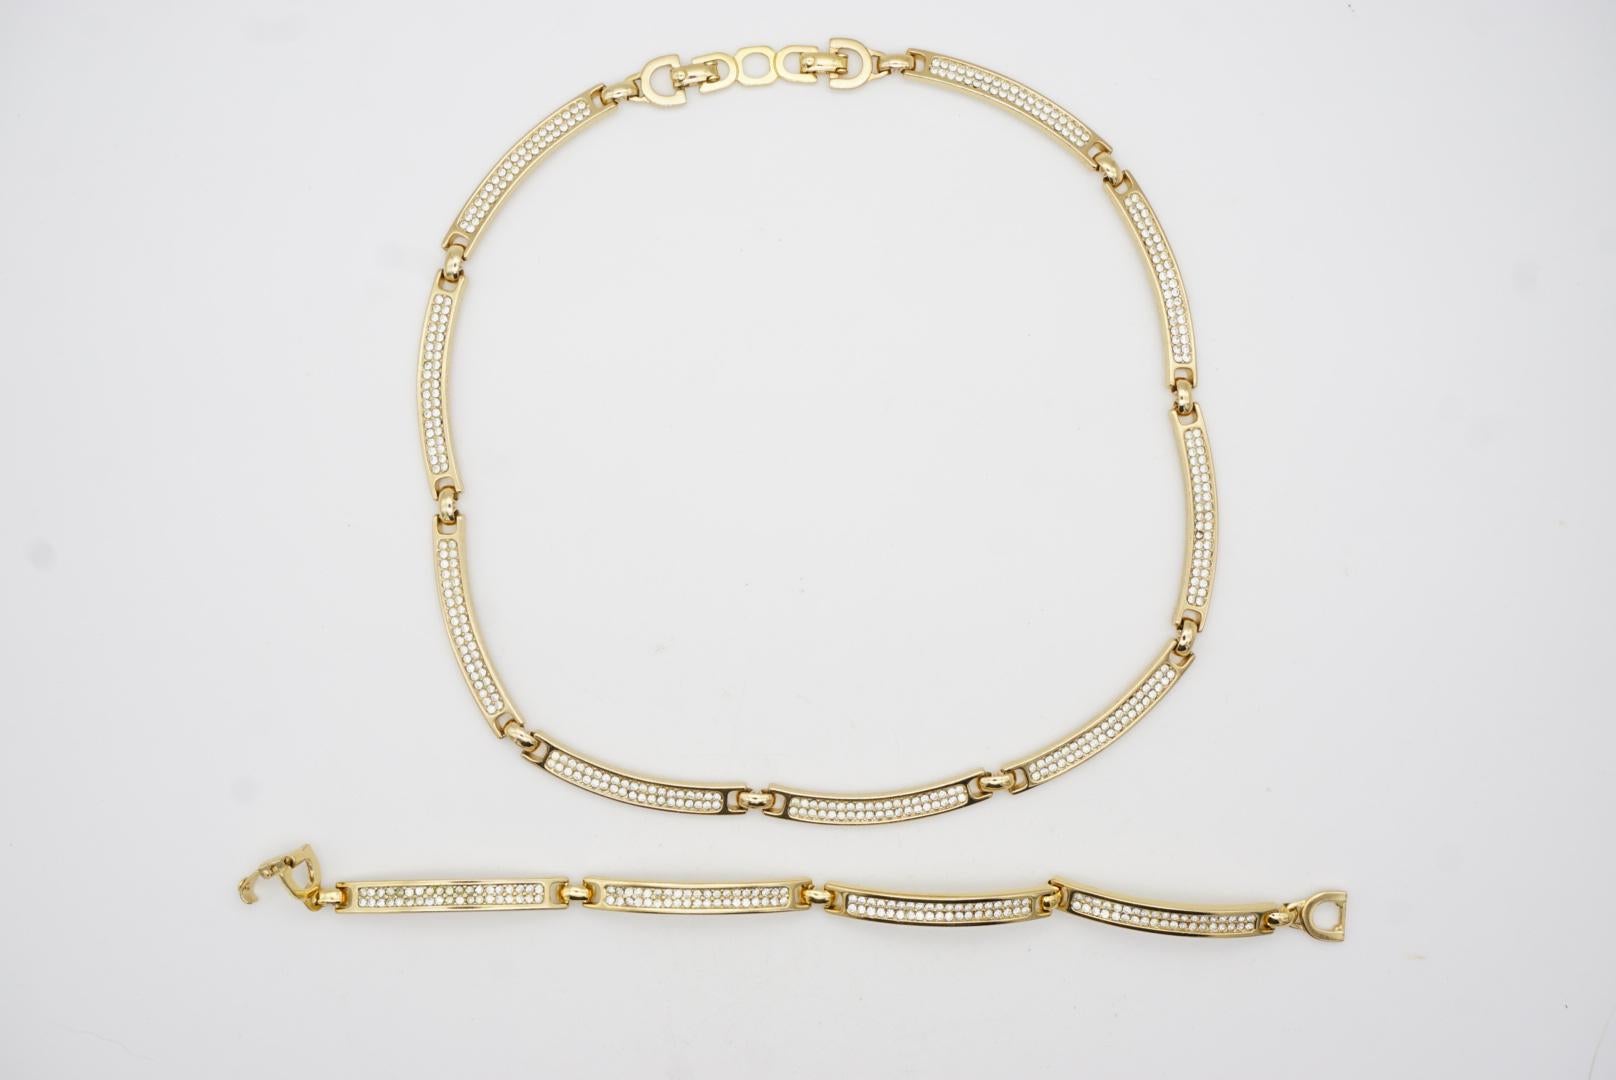 Christian Dior Vintage 1980s Unisex Crystals Interlink Choker Necklace Bracelet For Sale 7